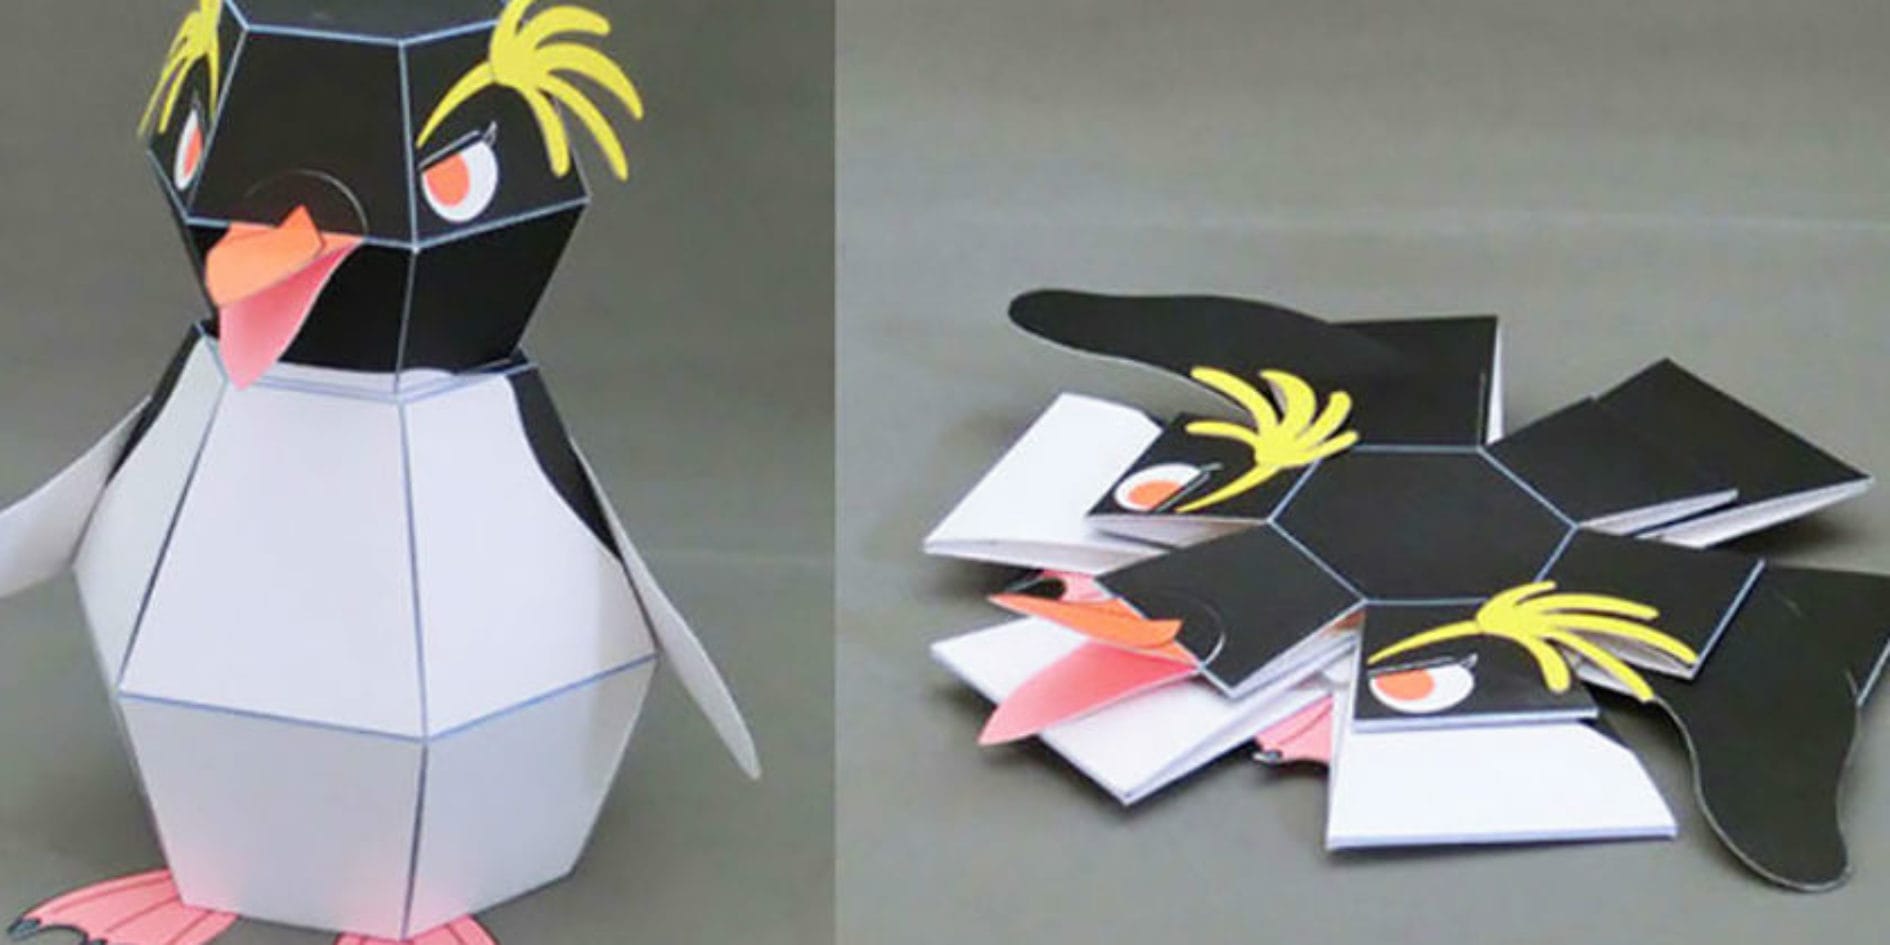 Оригами движущиеся фигурки: Подвижные схемы сборки оригами | Оригами